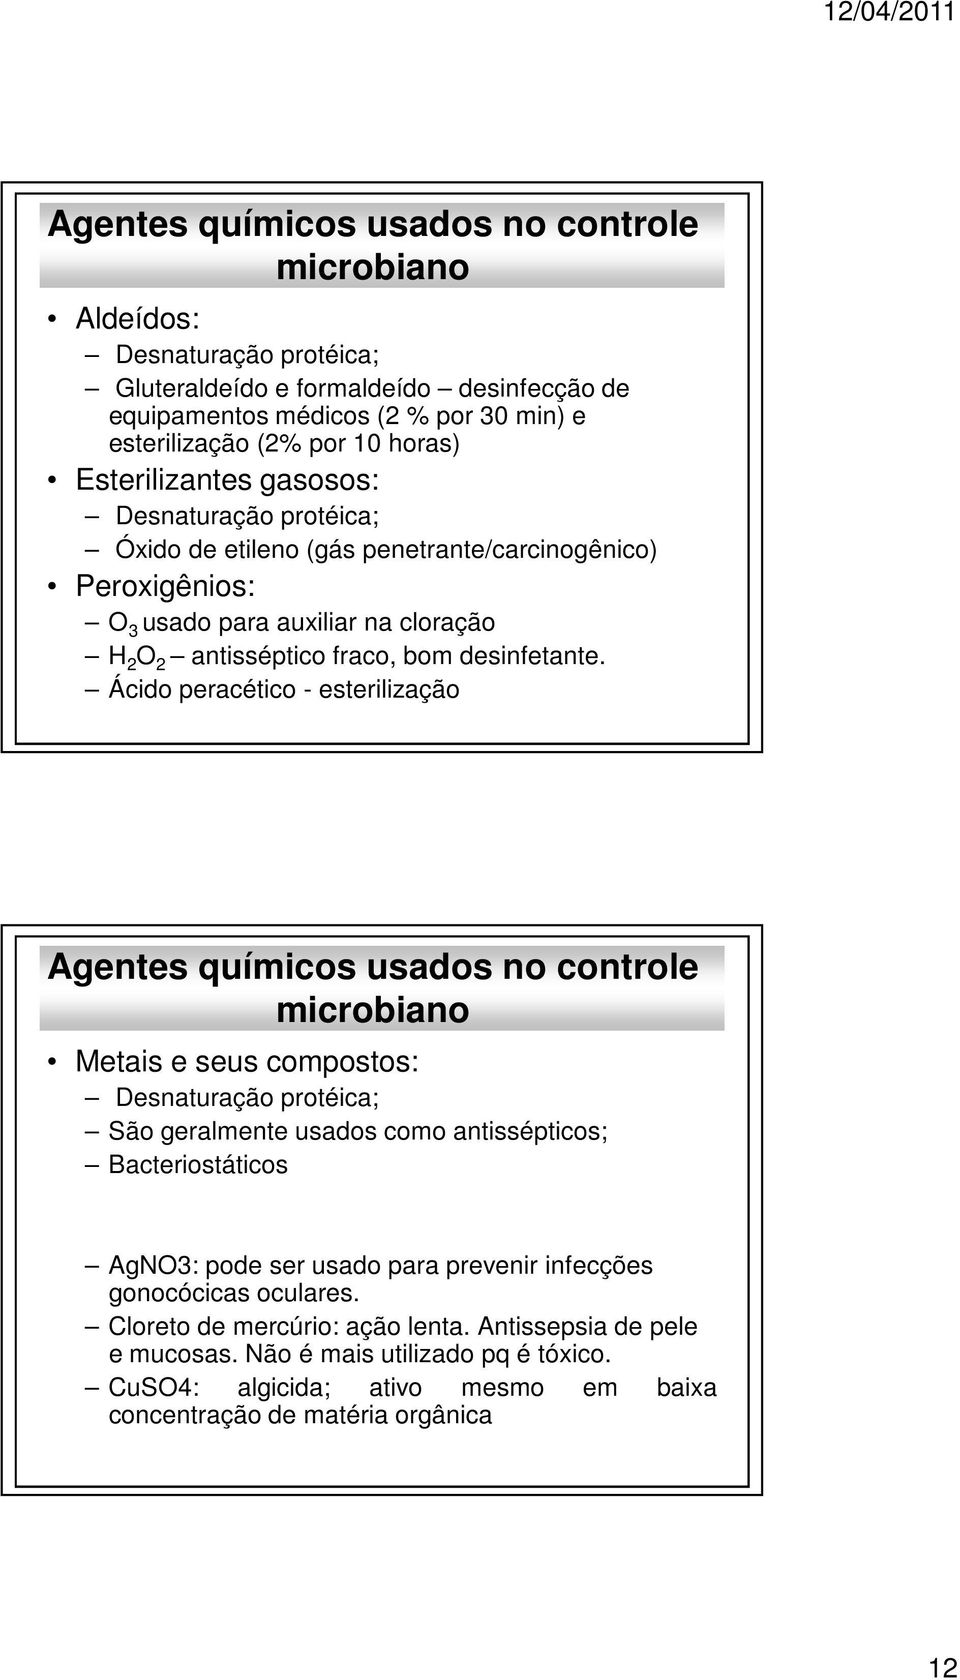 Ácido peracético - esterilização Agentes químicos usados no controle Metais e seus compostos: Desnaturação protéica; São geralmente usados como antissépticos; Bacteriostáticos AgNO3: pode ser usado